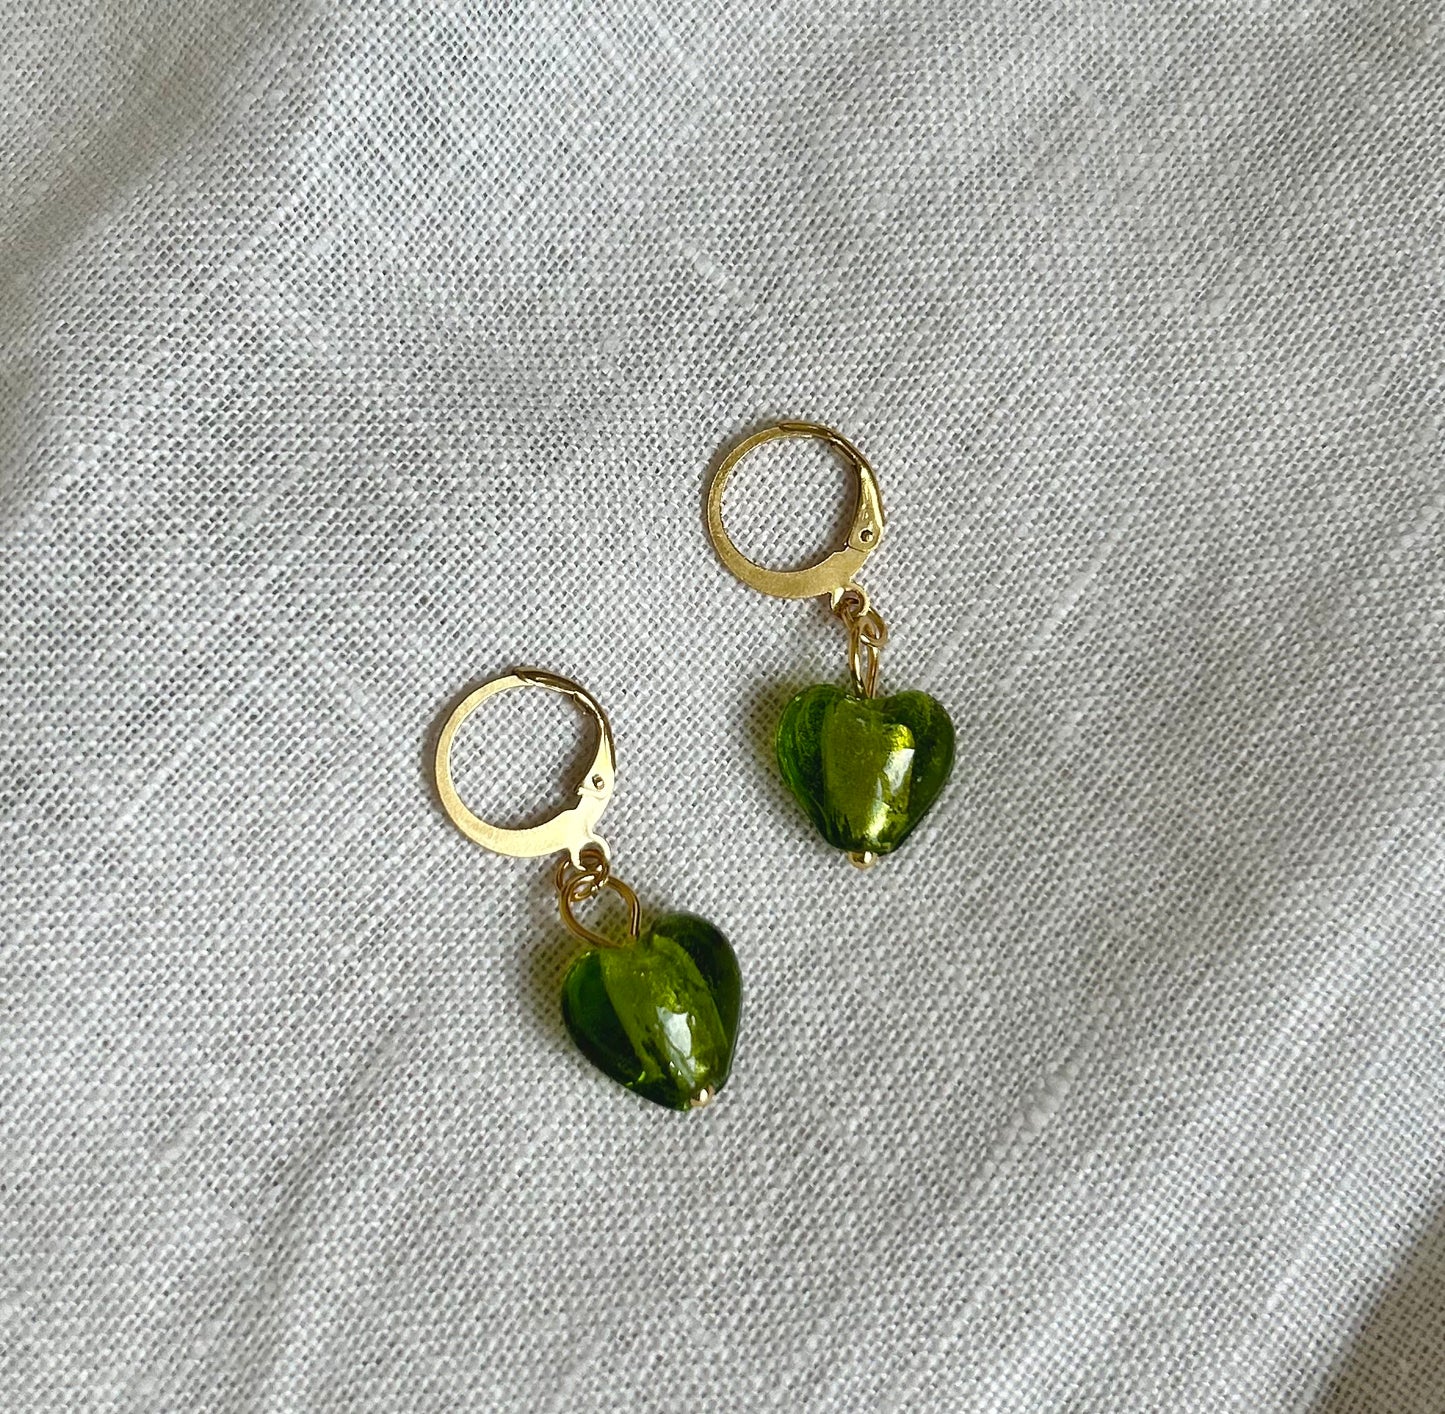 Green bonbons earrings E48